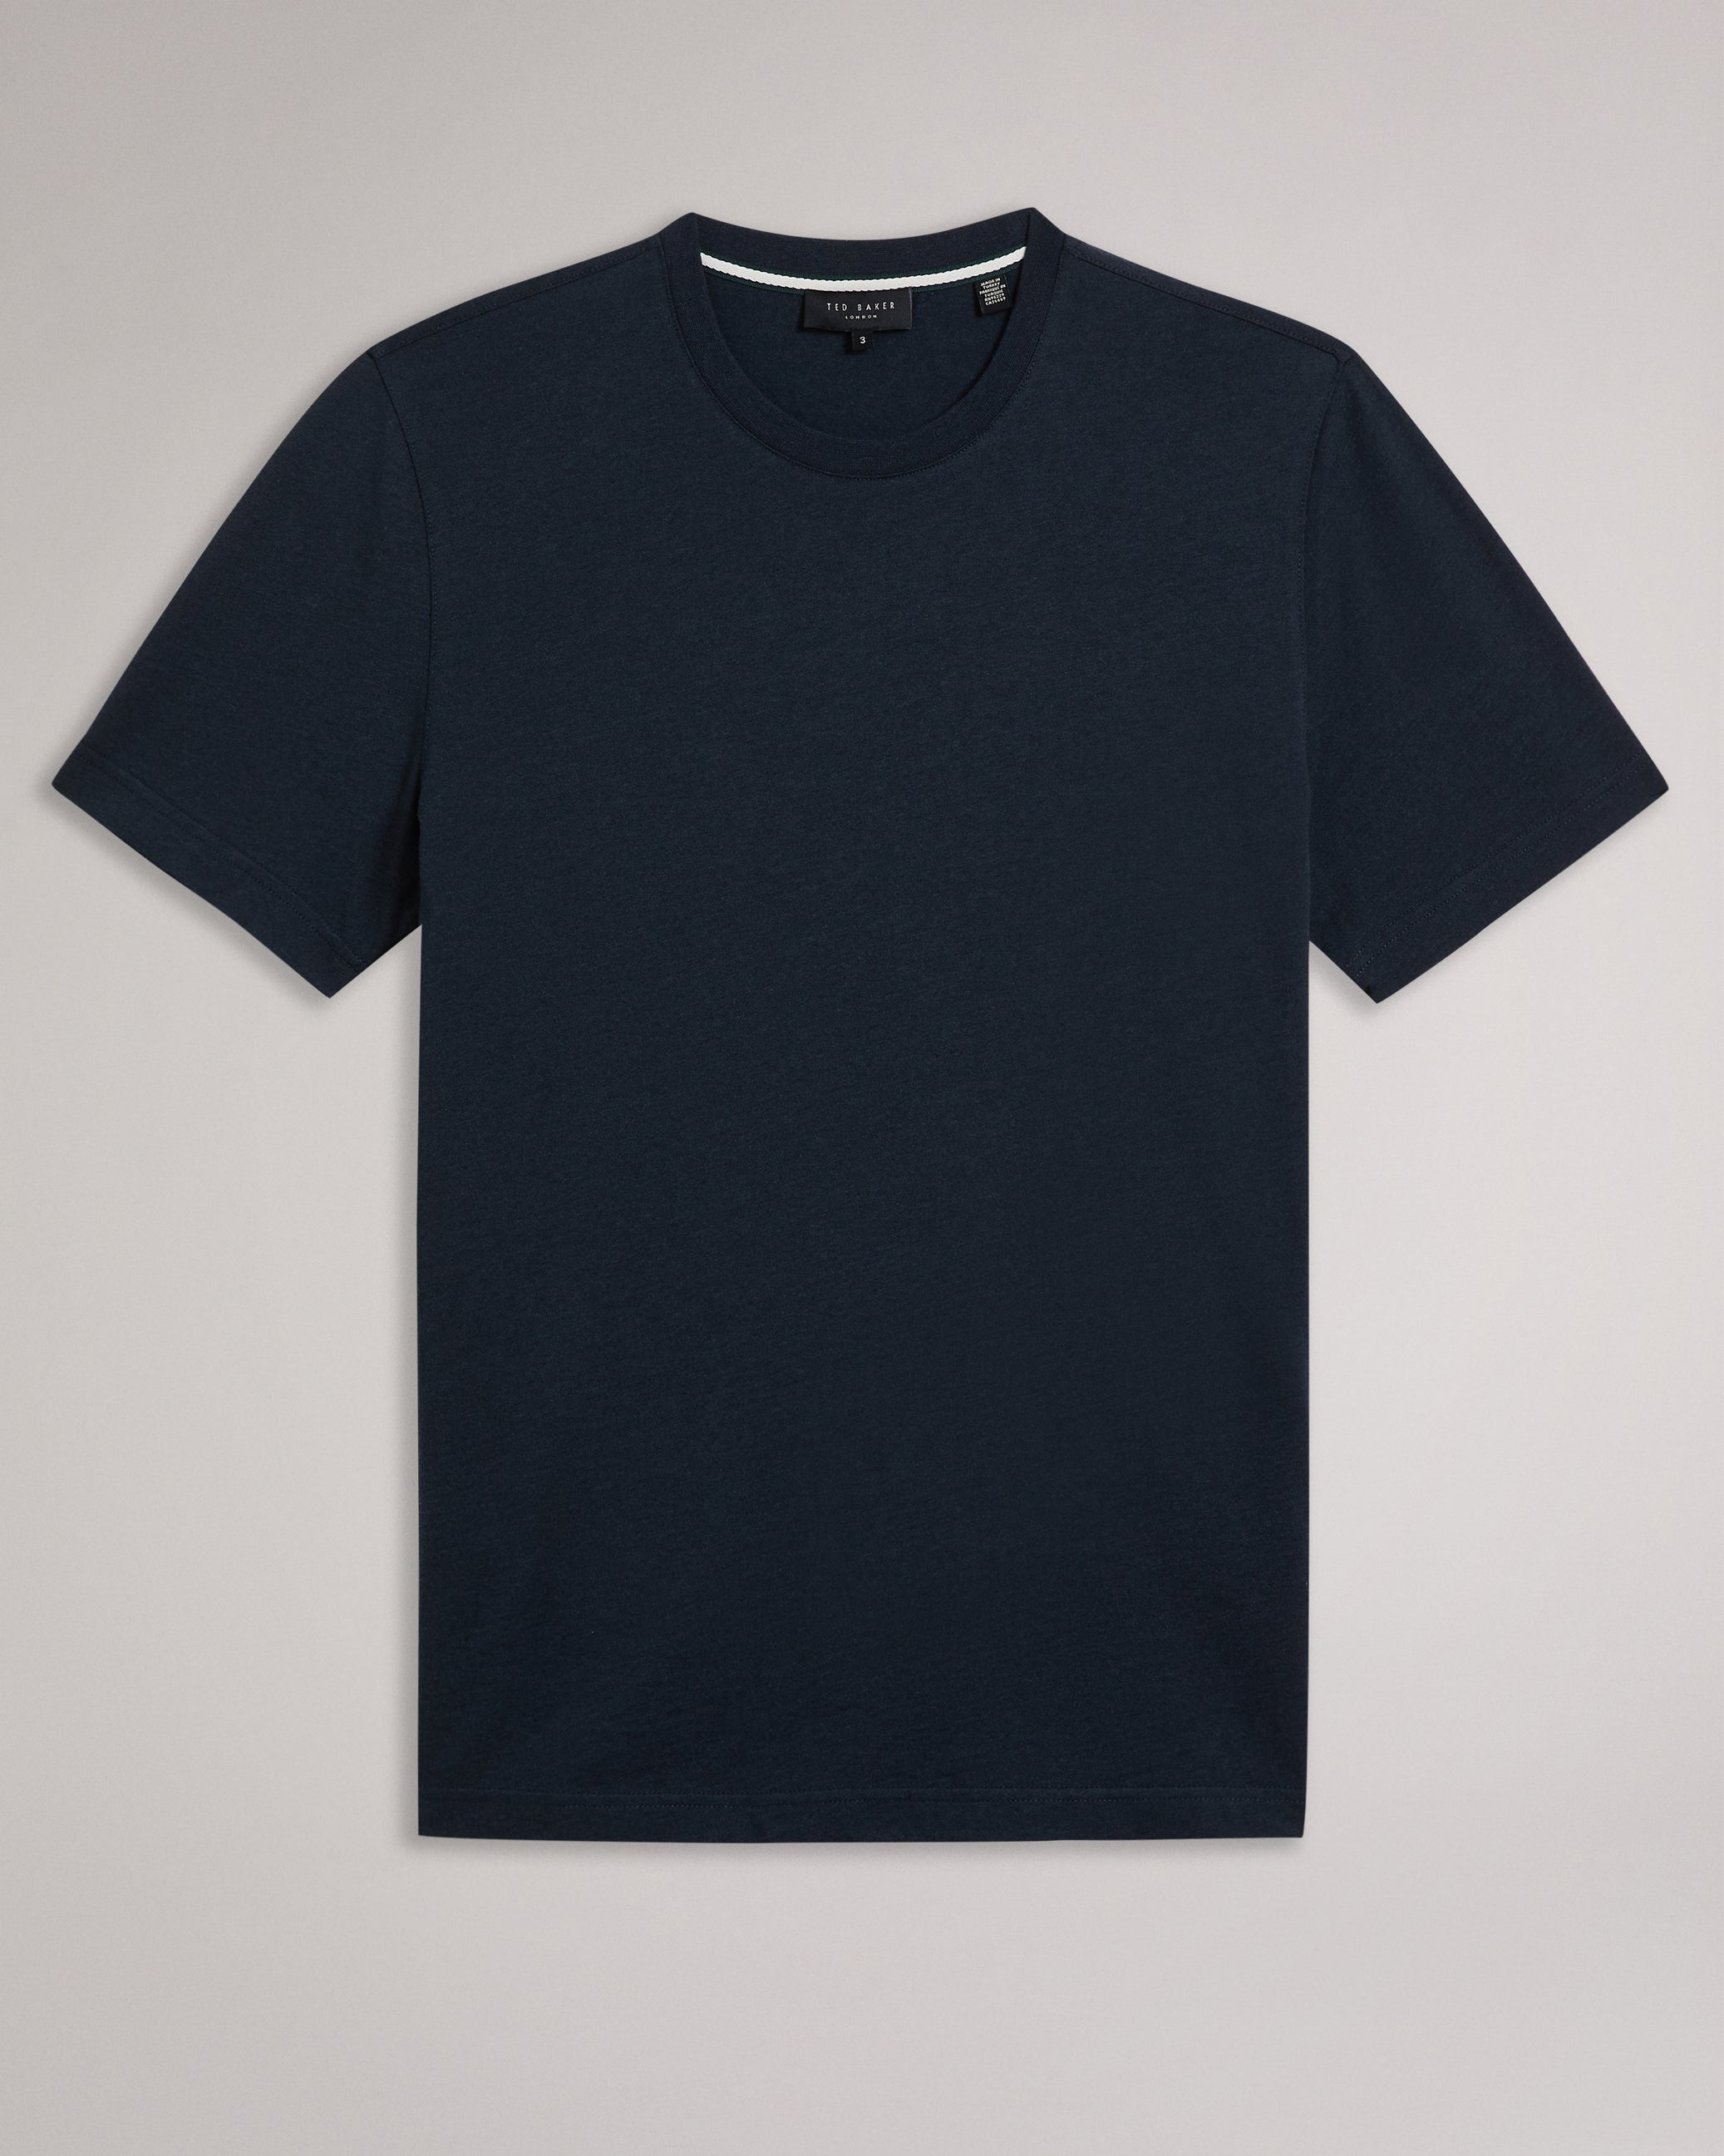 Zeppel Cashmere Blend T-Shirt